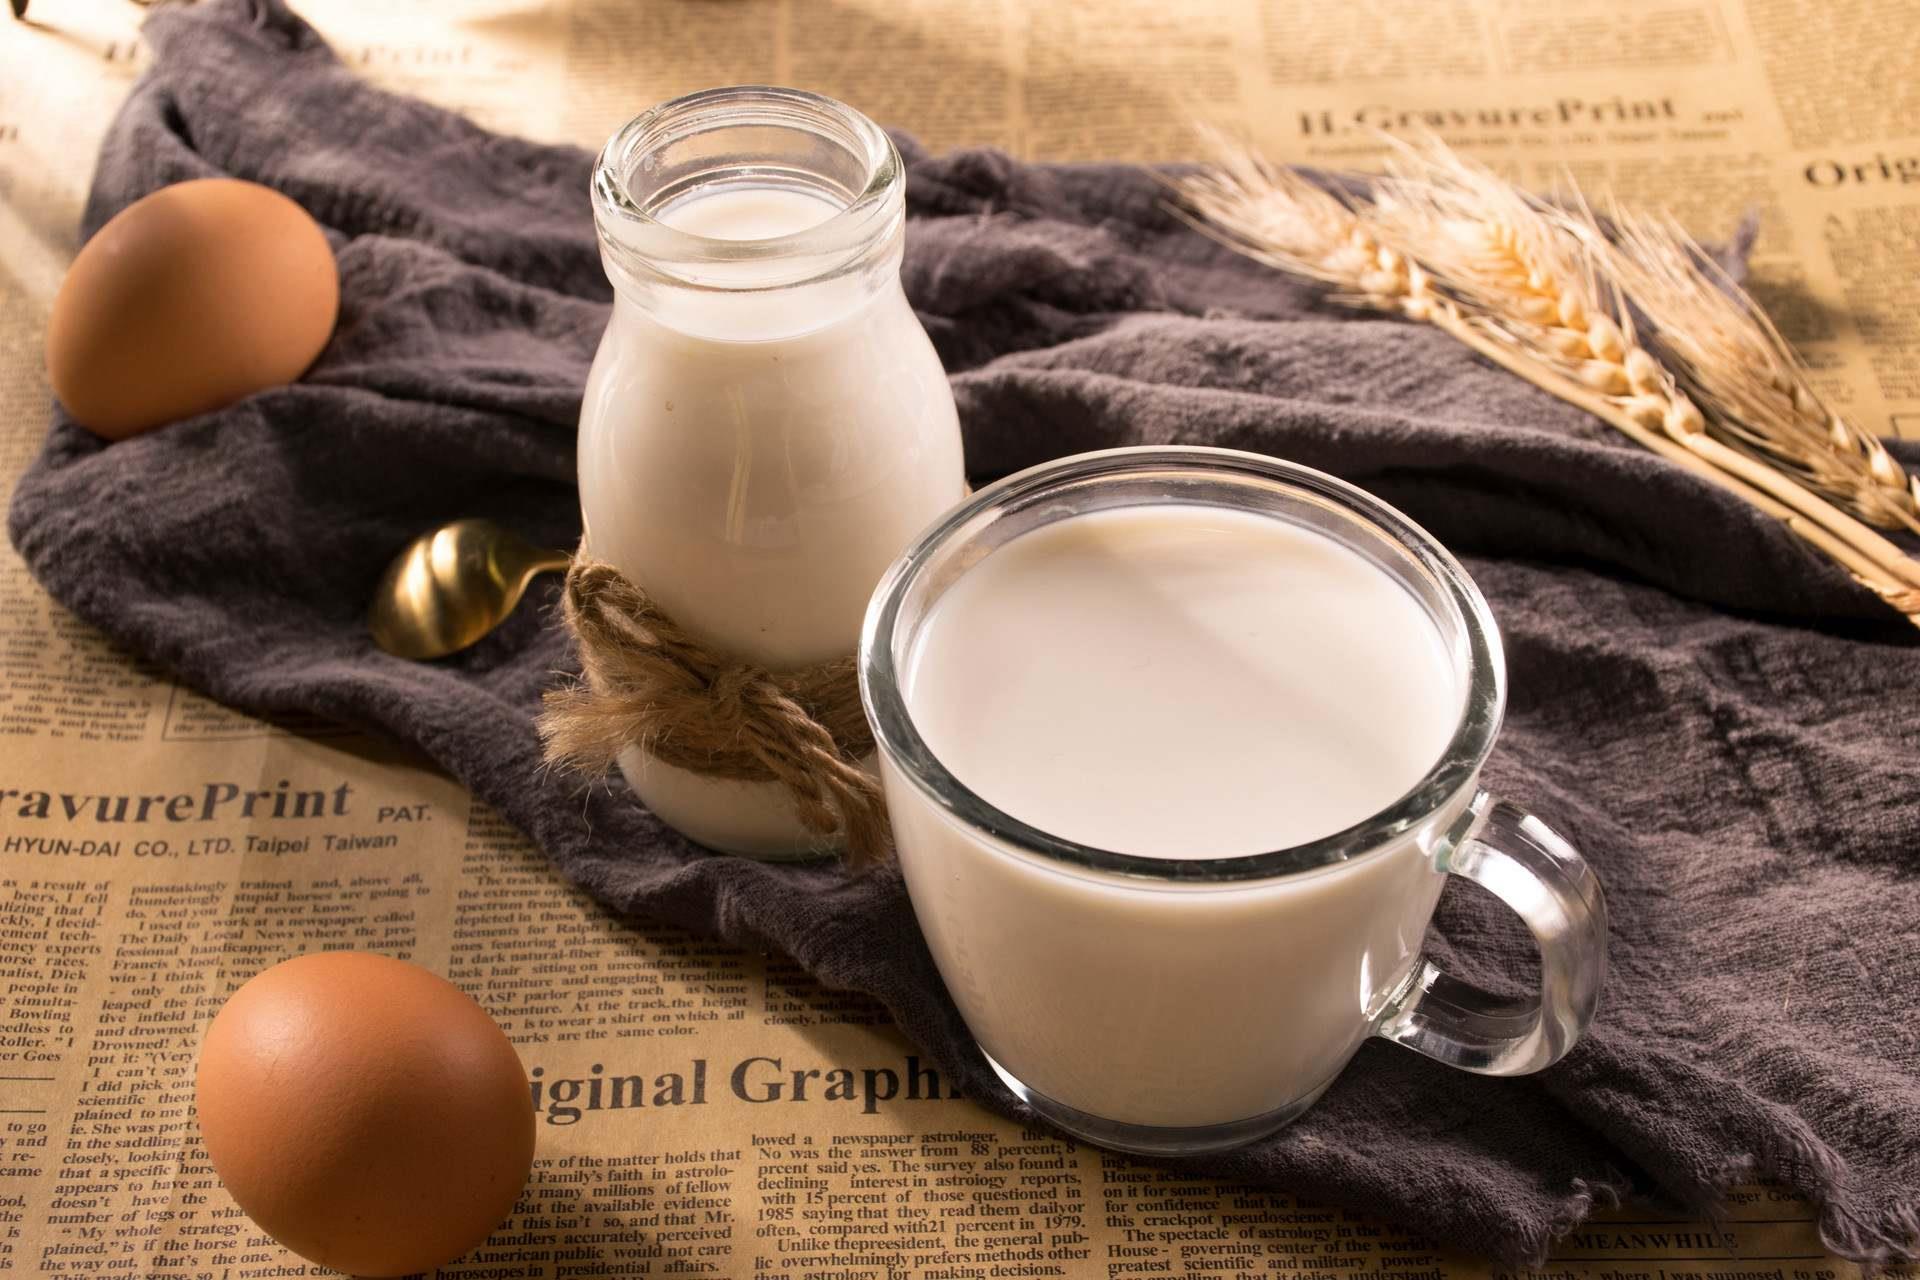 塞学者认为塞牛奶短缺将长期存在 华诚进出口数据观察报道